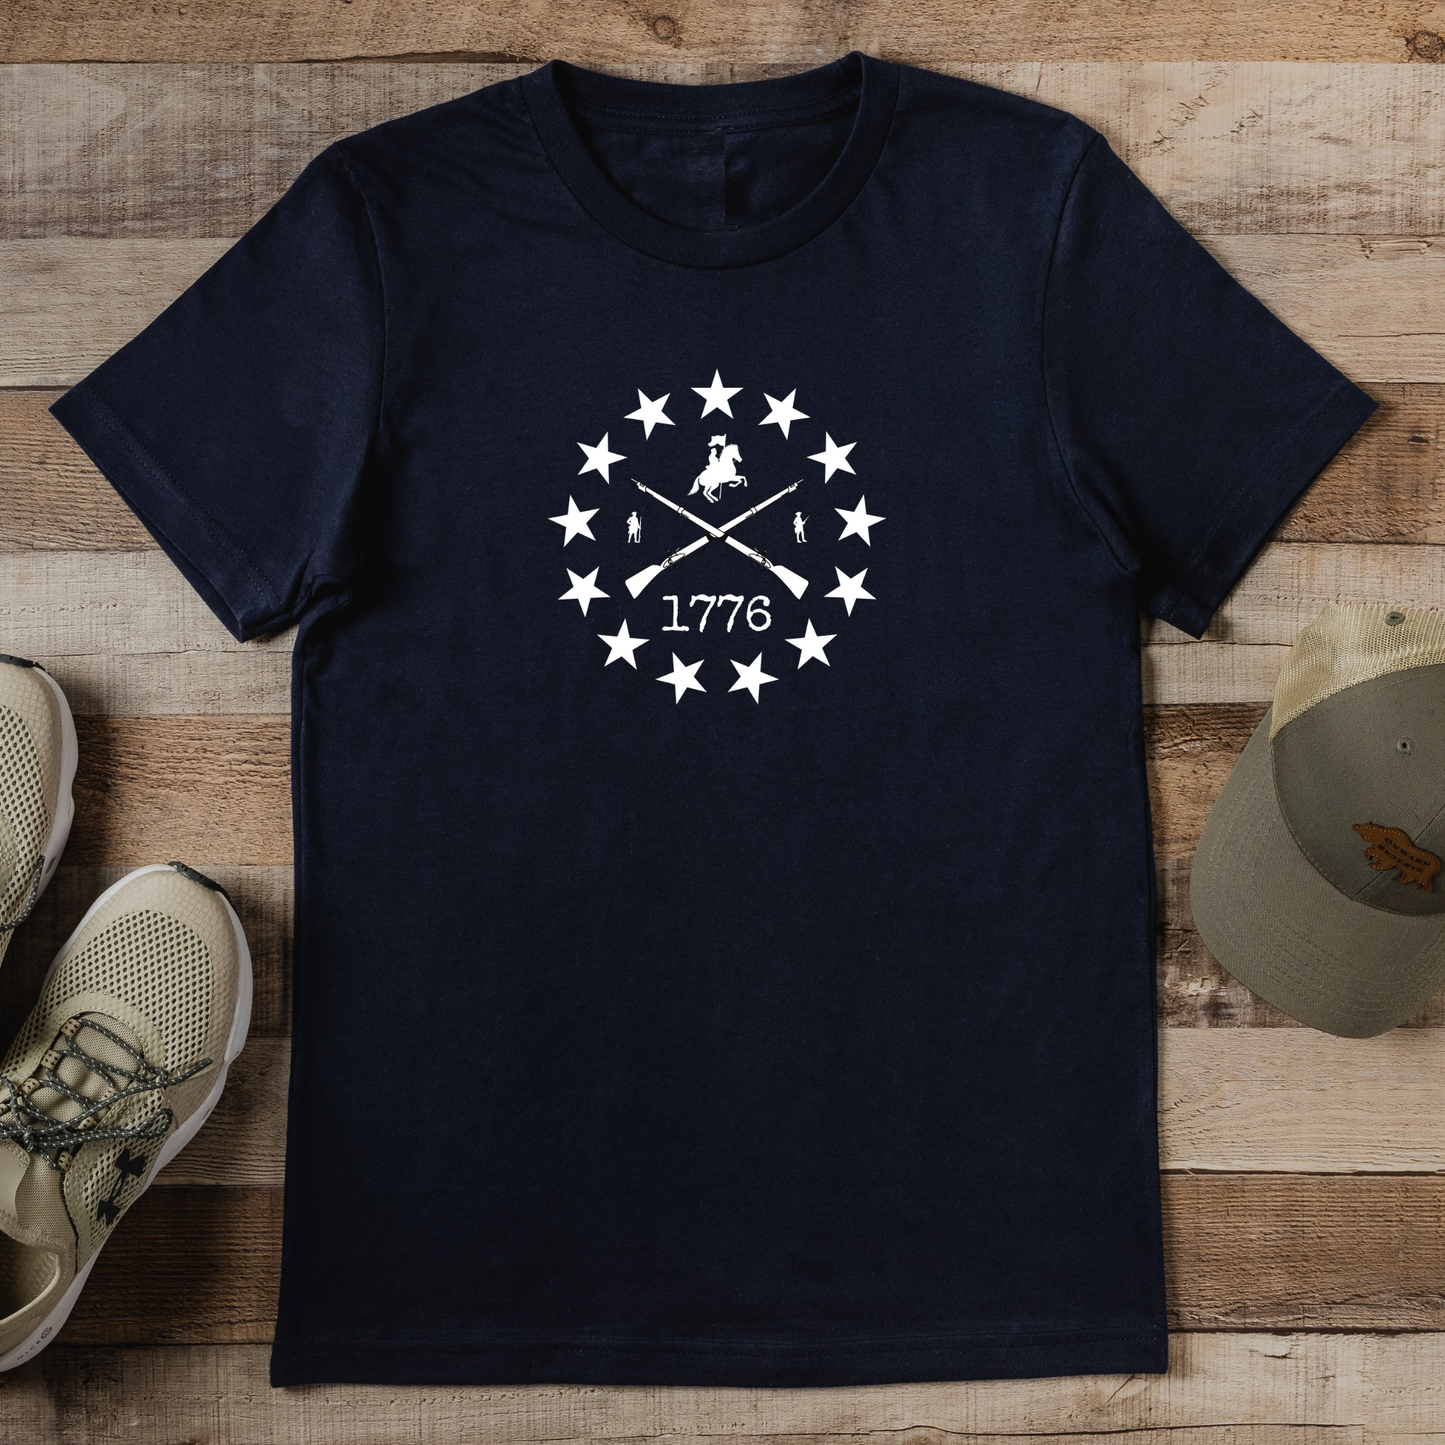 Patriotic T-Shirt, Revolutionary War T-Shirt, American Patriot Shirt, 13 Colonies Patriotic Shirt